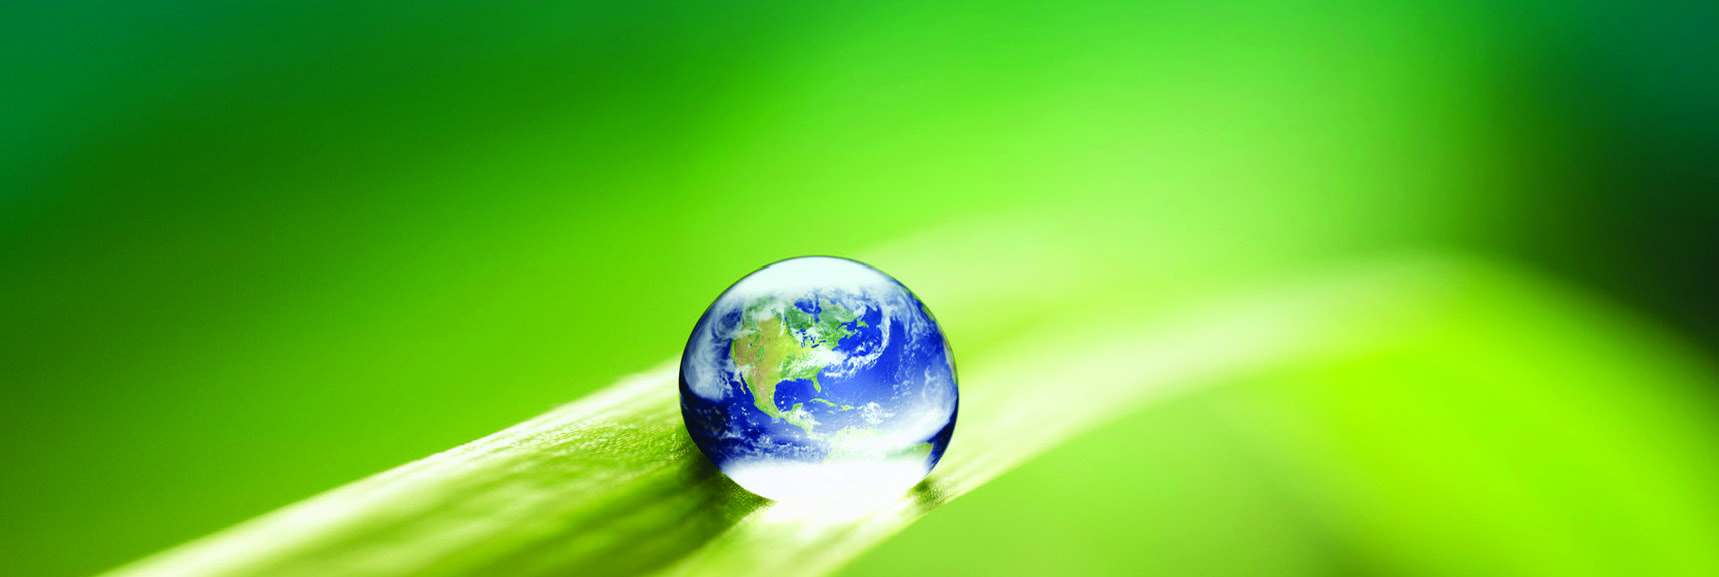 马思特液体解决方案公司绿色政策<p>马思特液体解决方案，作为全球金属加工液行业领导者，充分认同在提高生产力和削减成本的同时推广环保理念的责任。作为切削、研磨加工液和清洗剂产品研发和制造的全球领先者，马思特液体解决方案始终致力于环保可再生的解决方案。这个理念可以追溯到半个世纪之前。 </p>
<p>从一开始，我们就许下承诺，保障每一次使用产品过程中的安全，保护我们所居住的地球，确保每一个客户良性的盈利模式。这三点是我们开发所有产品和提供所有服务的基石。</p>
<h2>以人为本</h2>
<p>马思特液体解决方案公司是全球第一家自愿严格测试（切削液、磨削液和清洗液）产品安全性的企业，并且将这个规定延续至今。我们的独特配方萃取了高纯度原料，而最终的成品配方还将通过额外彻底的测试使其更加安全可靠。同时，我们还提供了全套的产品使用说明和完整的培训体系，让每一个用户都能正确用好马思特液体解决方案产品并使其发挥最大的作用。</p>
<h2>保护地球</h2>
<p>早在20世纪60年代，我们就开始思考如何实现产品的重复利用。现在，为了保护我们居住的地球，环保可持续的这种理念被更广泛地应用于所有决策之初。马思特液体解决方案公司践行着为全球降低能耗，推进环保可持续发展，不仅优化可重复利用产品，也强调办公设施和工厂设备的环保和可持续发展。我们冷却液的管理程序和可重复使用系统设计，正持续帮助客户企业减少用量，并最大程度降低行业的浪费。这是我们从实践中汲取的，如何降低浪费去保护我们的环境。同时，马思特液体解决方案公司也在持续降低我们的企业排放对环境造成的影响。简而言之，我们不断学习，并找寻不同的方法去提供更安全的产品，去降低工厂的能耗，尽一切可能保护我们的环境。</p>
<h2>良性盈利</h2>
<p>马思特液体解决方案公司懂得盈利不仅仅只是降低支出。我们与我们的客户、经销商一起分析并解决问题。这么多年过去了，我们的经销商伙伴们都经过慎重筛选、培训和考核，不仅可以处理切削液、磨削液和清洗液等问题，懂得如何使用冷却液管理系统，如何优化重复使用，也能够解决冷却液相关的功能与机械故障等。我们的经销合作伙伴都具备能力可以提供多种帮助客户优化、减少产品用量等解决方案。</p>
<p>我们多方面注重我们客户的盈利性，包括通过选用适合的产品来优化设备管理来降低运营成本。此外，我们还将重点放在工艺改进上，从而可以降低废料率，减少运输费用，以及减少工业能耗。</p>
<h2>开创未来</h2>
<p>为了地球家园的今天和明天，我们制定并执行着多项环境保护措施。我们将积极与全球志同道合的组织机构保持合作关系，持续开发更高效的系统和配方。马思特液体解决方案将继续秉承安全、负责以及环保之理念，以满足未来的更多需要和更高标准。</p>